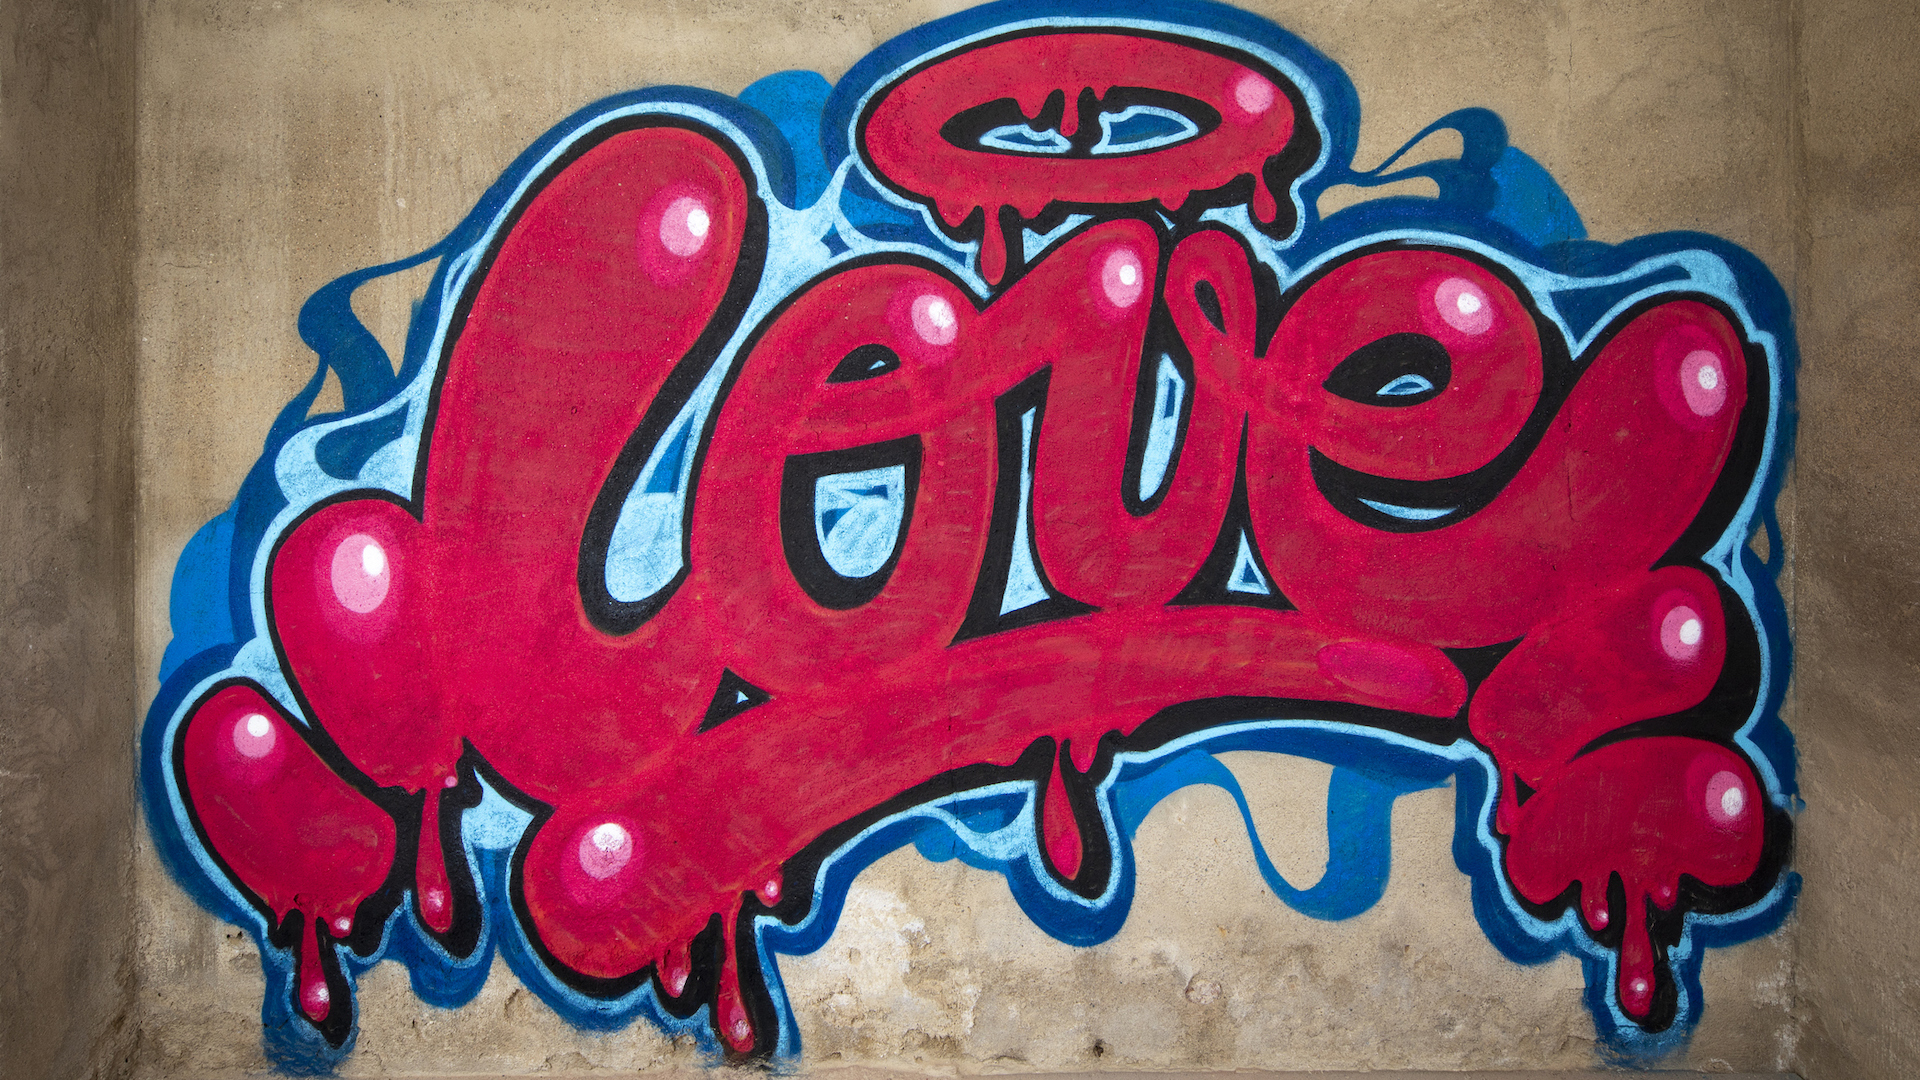 Love: colourful graffiti on a concrete wall